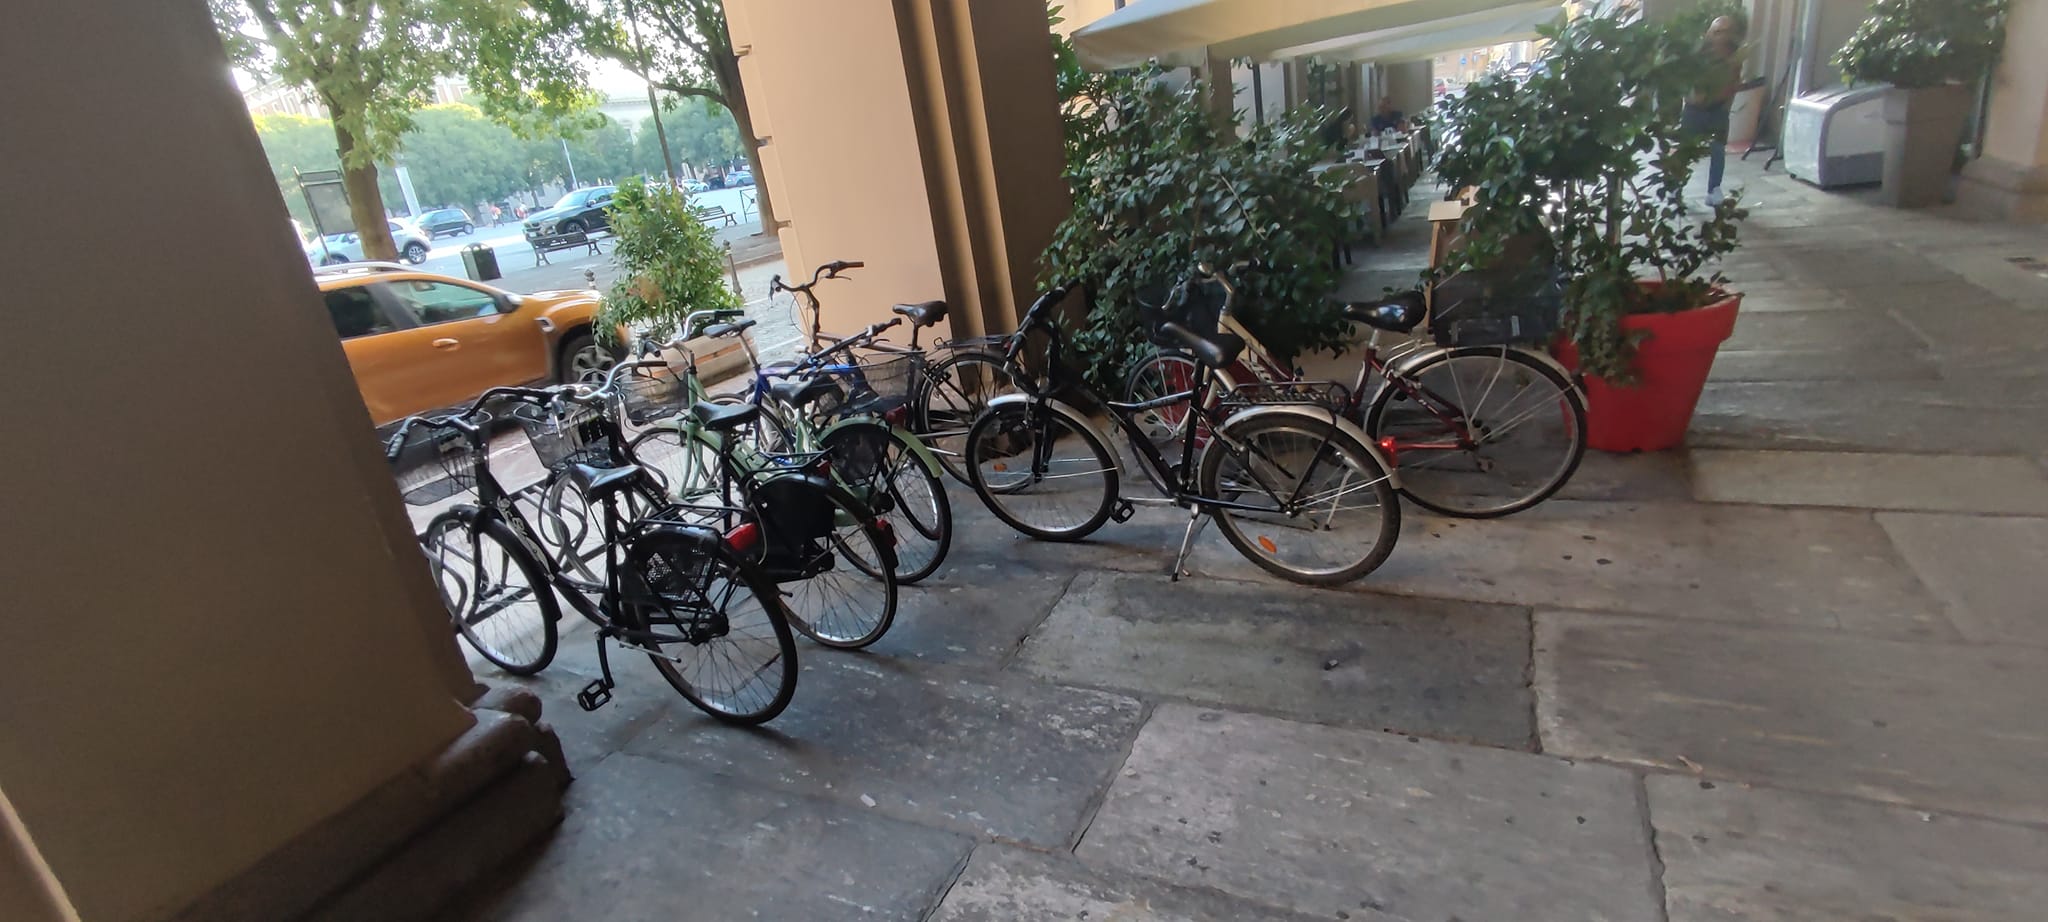 L’assessore Serra ringrazia i lavoratori che arrivano a Palazzo Rosso in bici